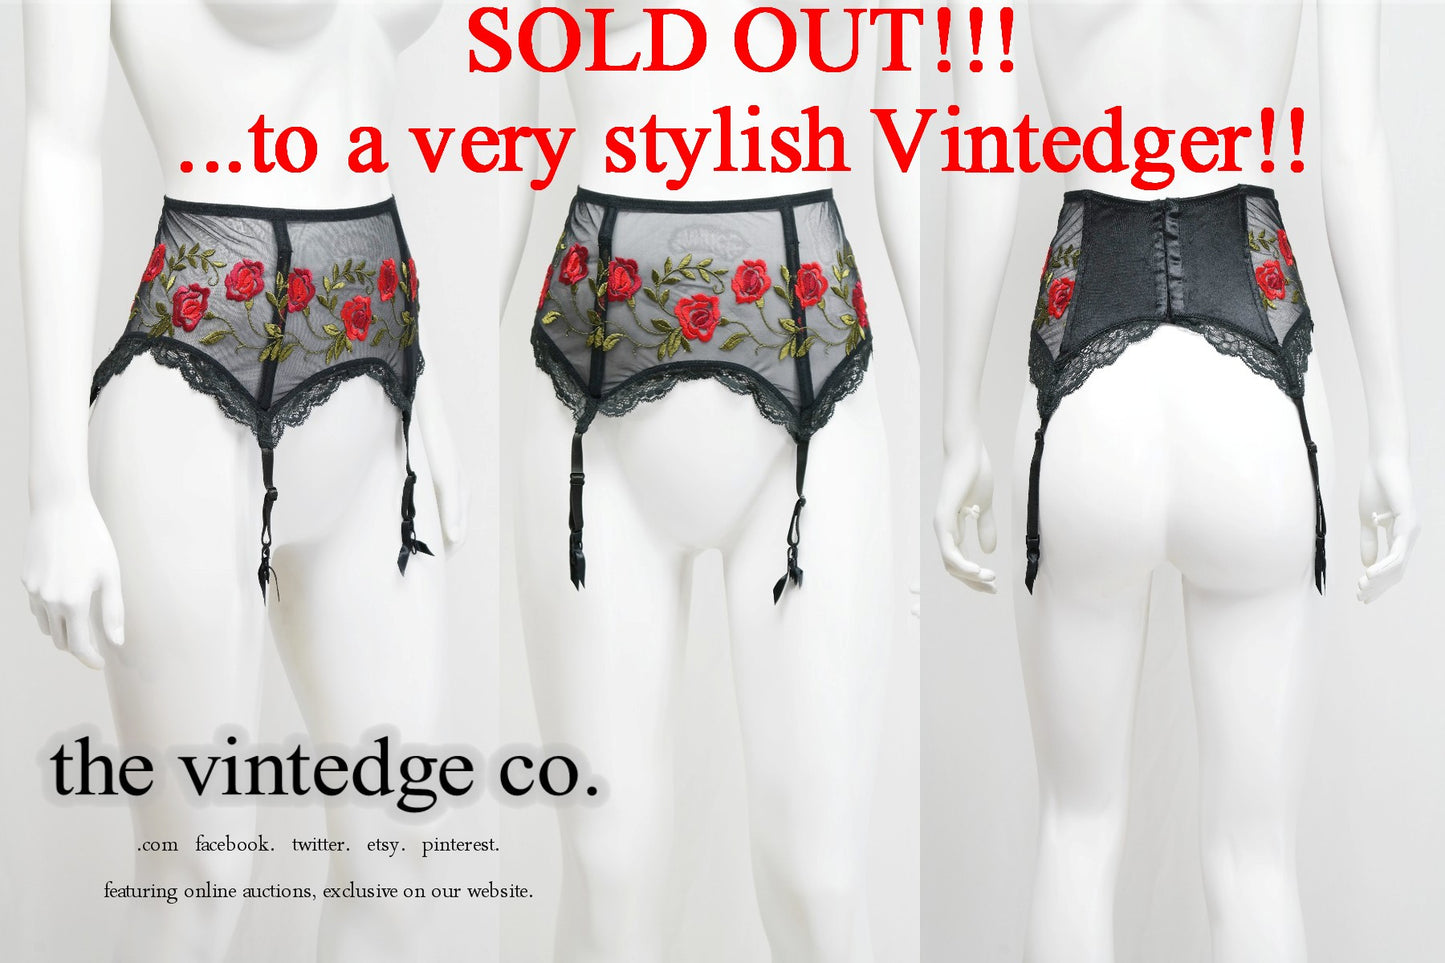 SOLD - Victorias Secret The Vintedge Co.